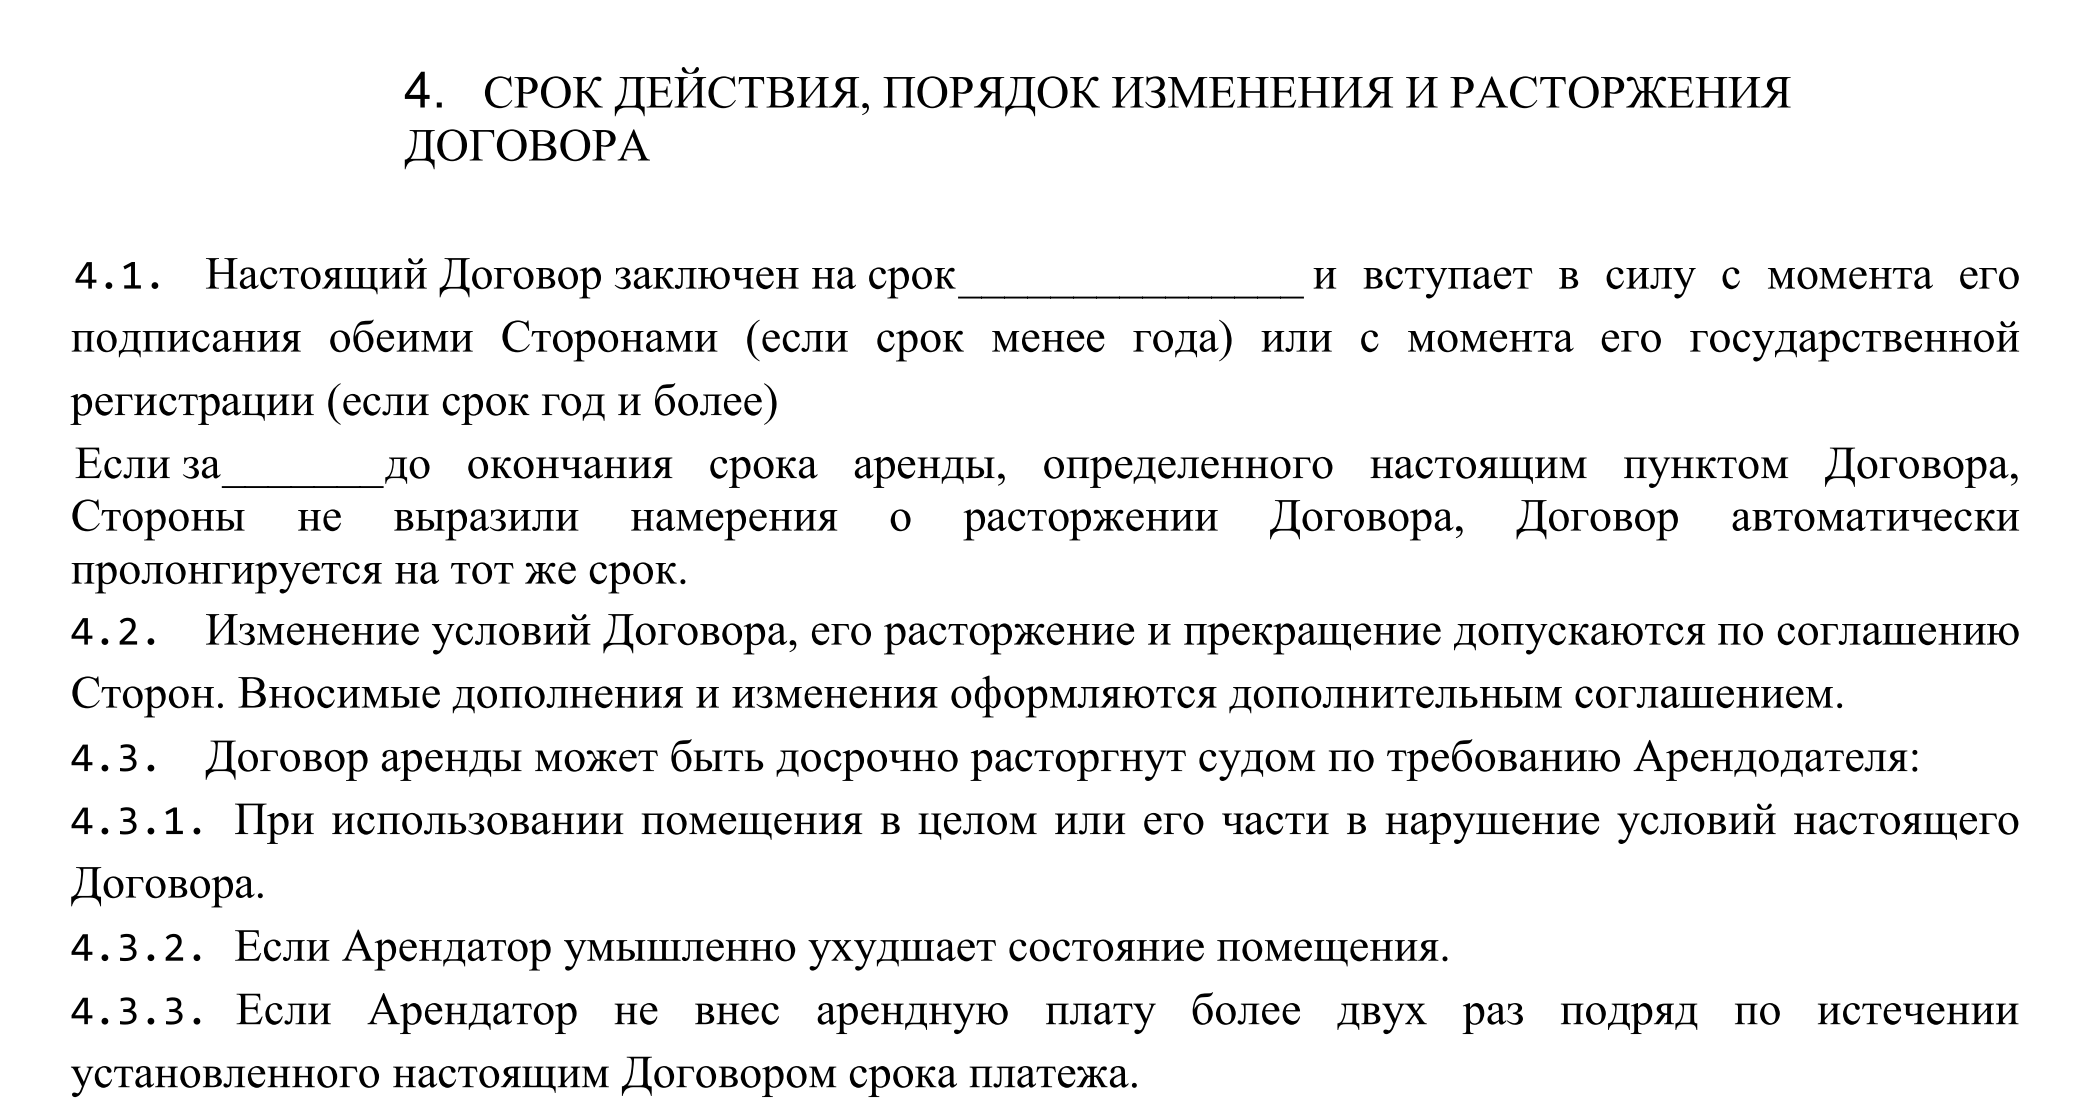 Дополнительное соглашение о продлении срока действия договора - народный советникъ